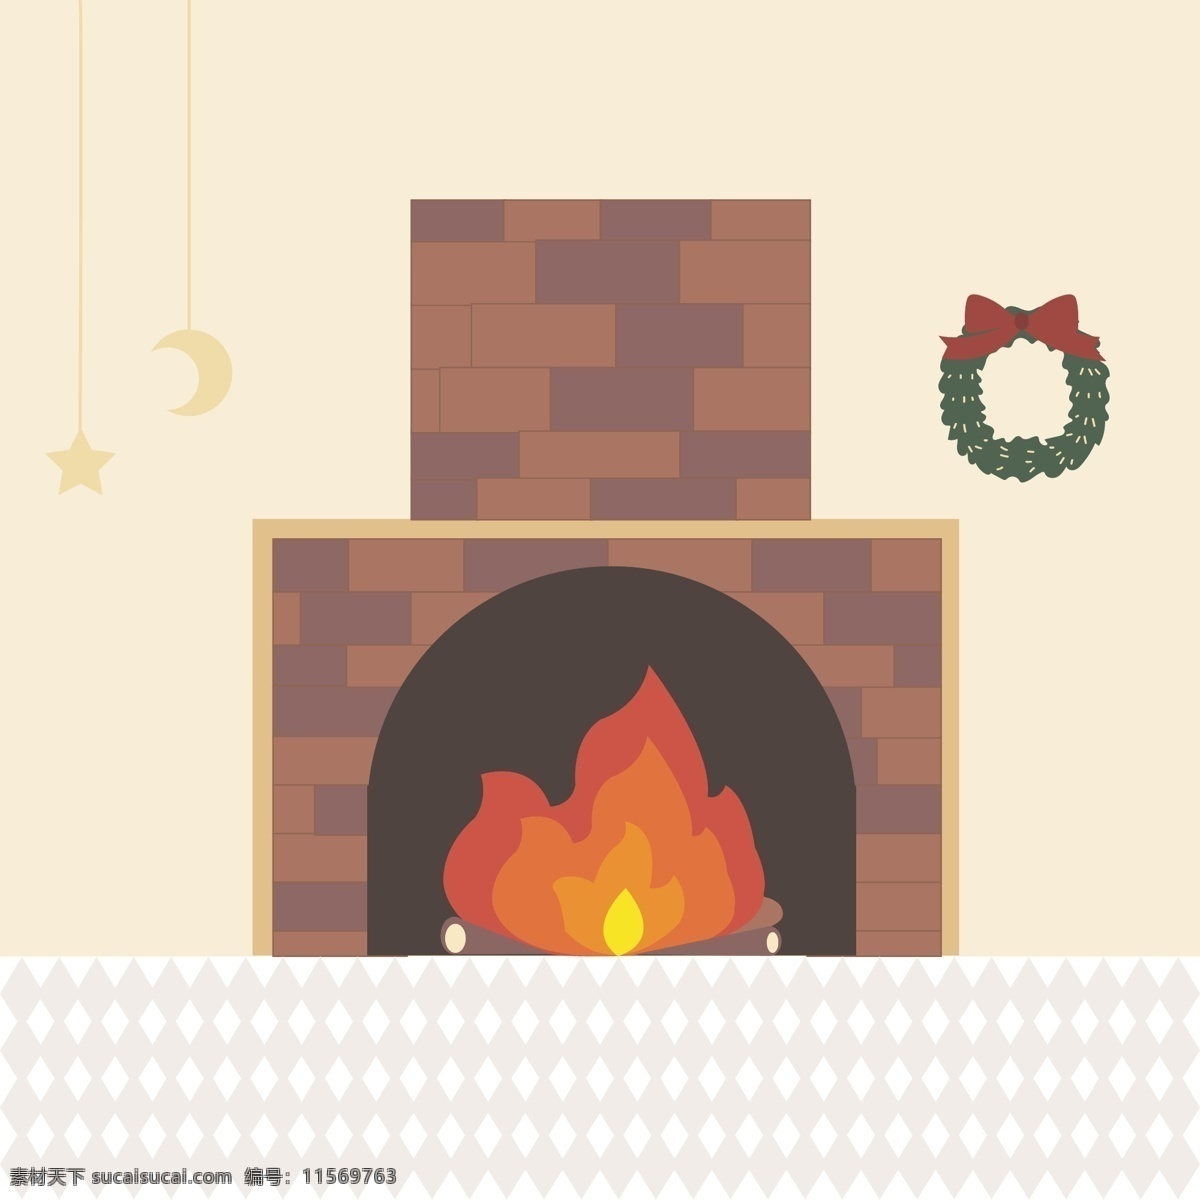 夷为平地 壁炉 温暖 冬天 炉子 火星 星月 亮 减少 层级 插图 炉 圣诞节